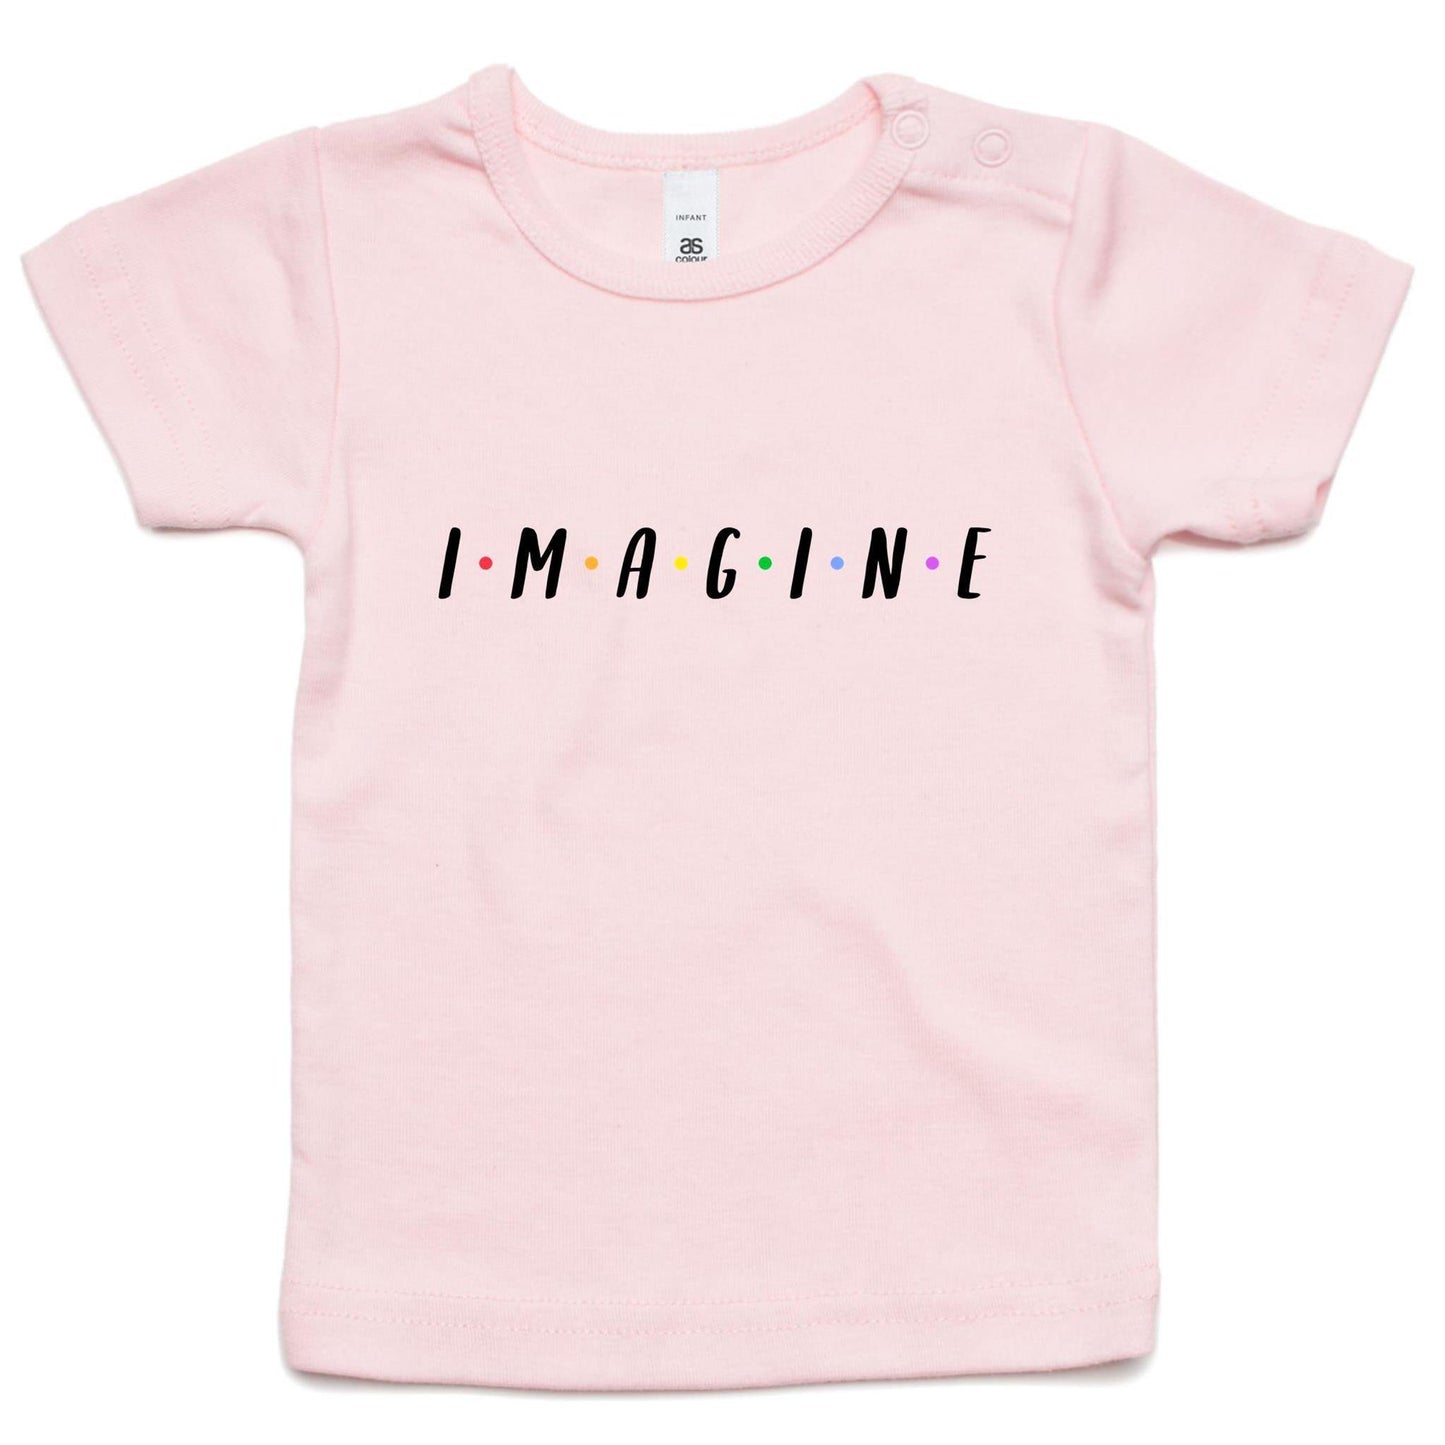 Imagine - Baby T-shirt Pink Baby T-shirt kids